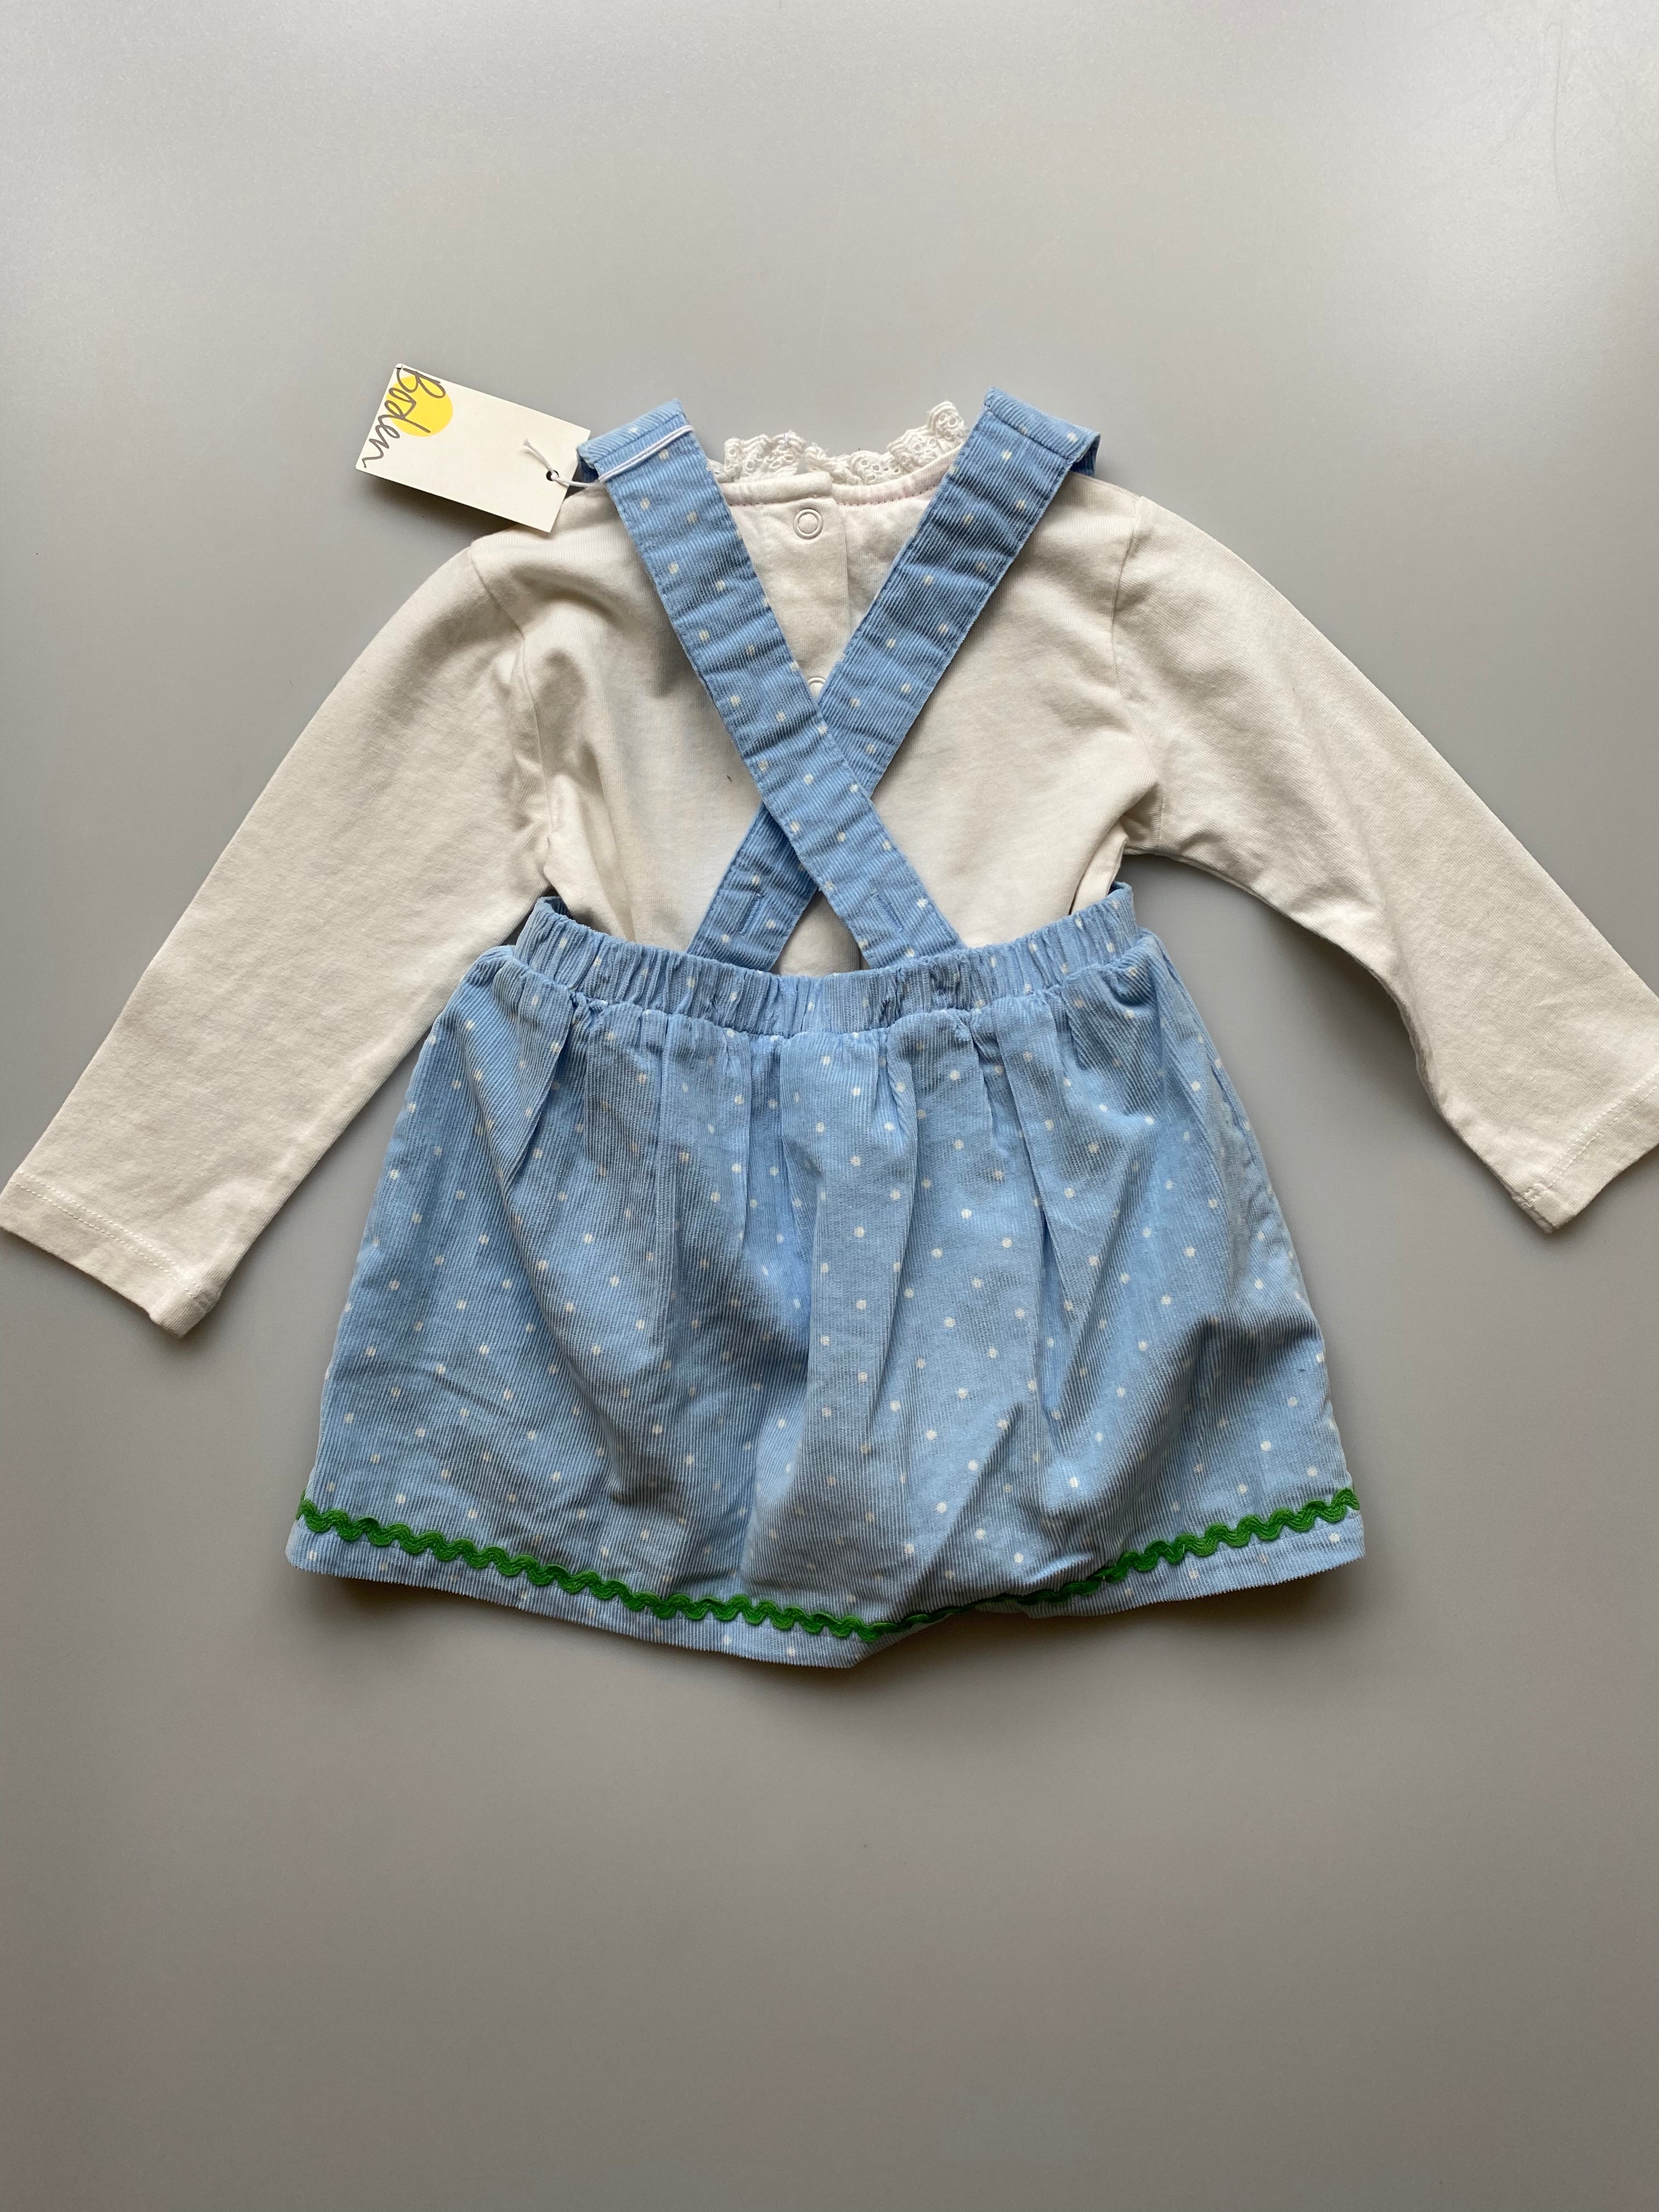 Boden Spring Cord Dress & Vest 3-6 Months